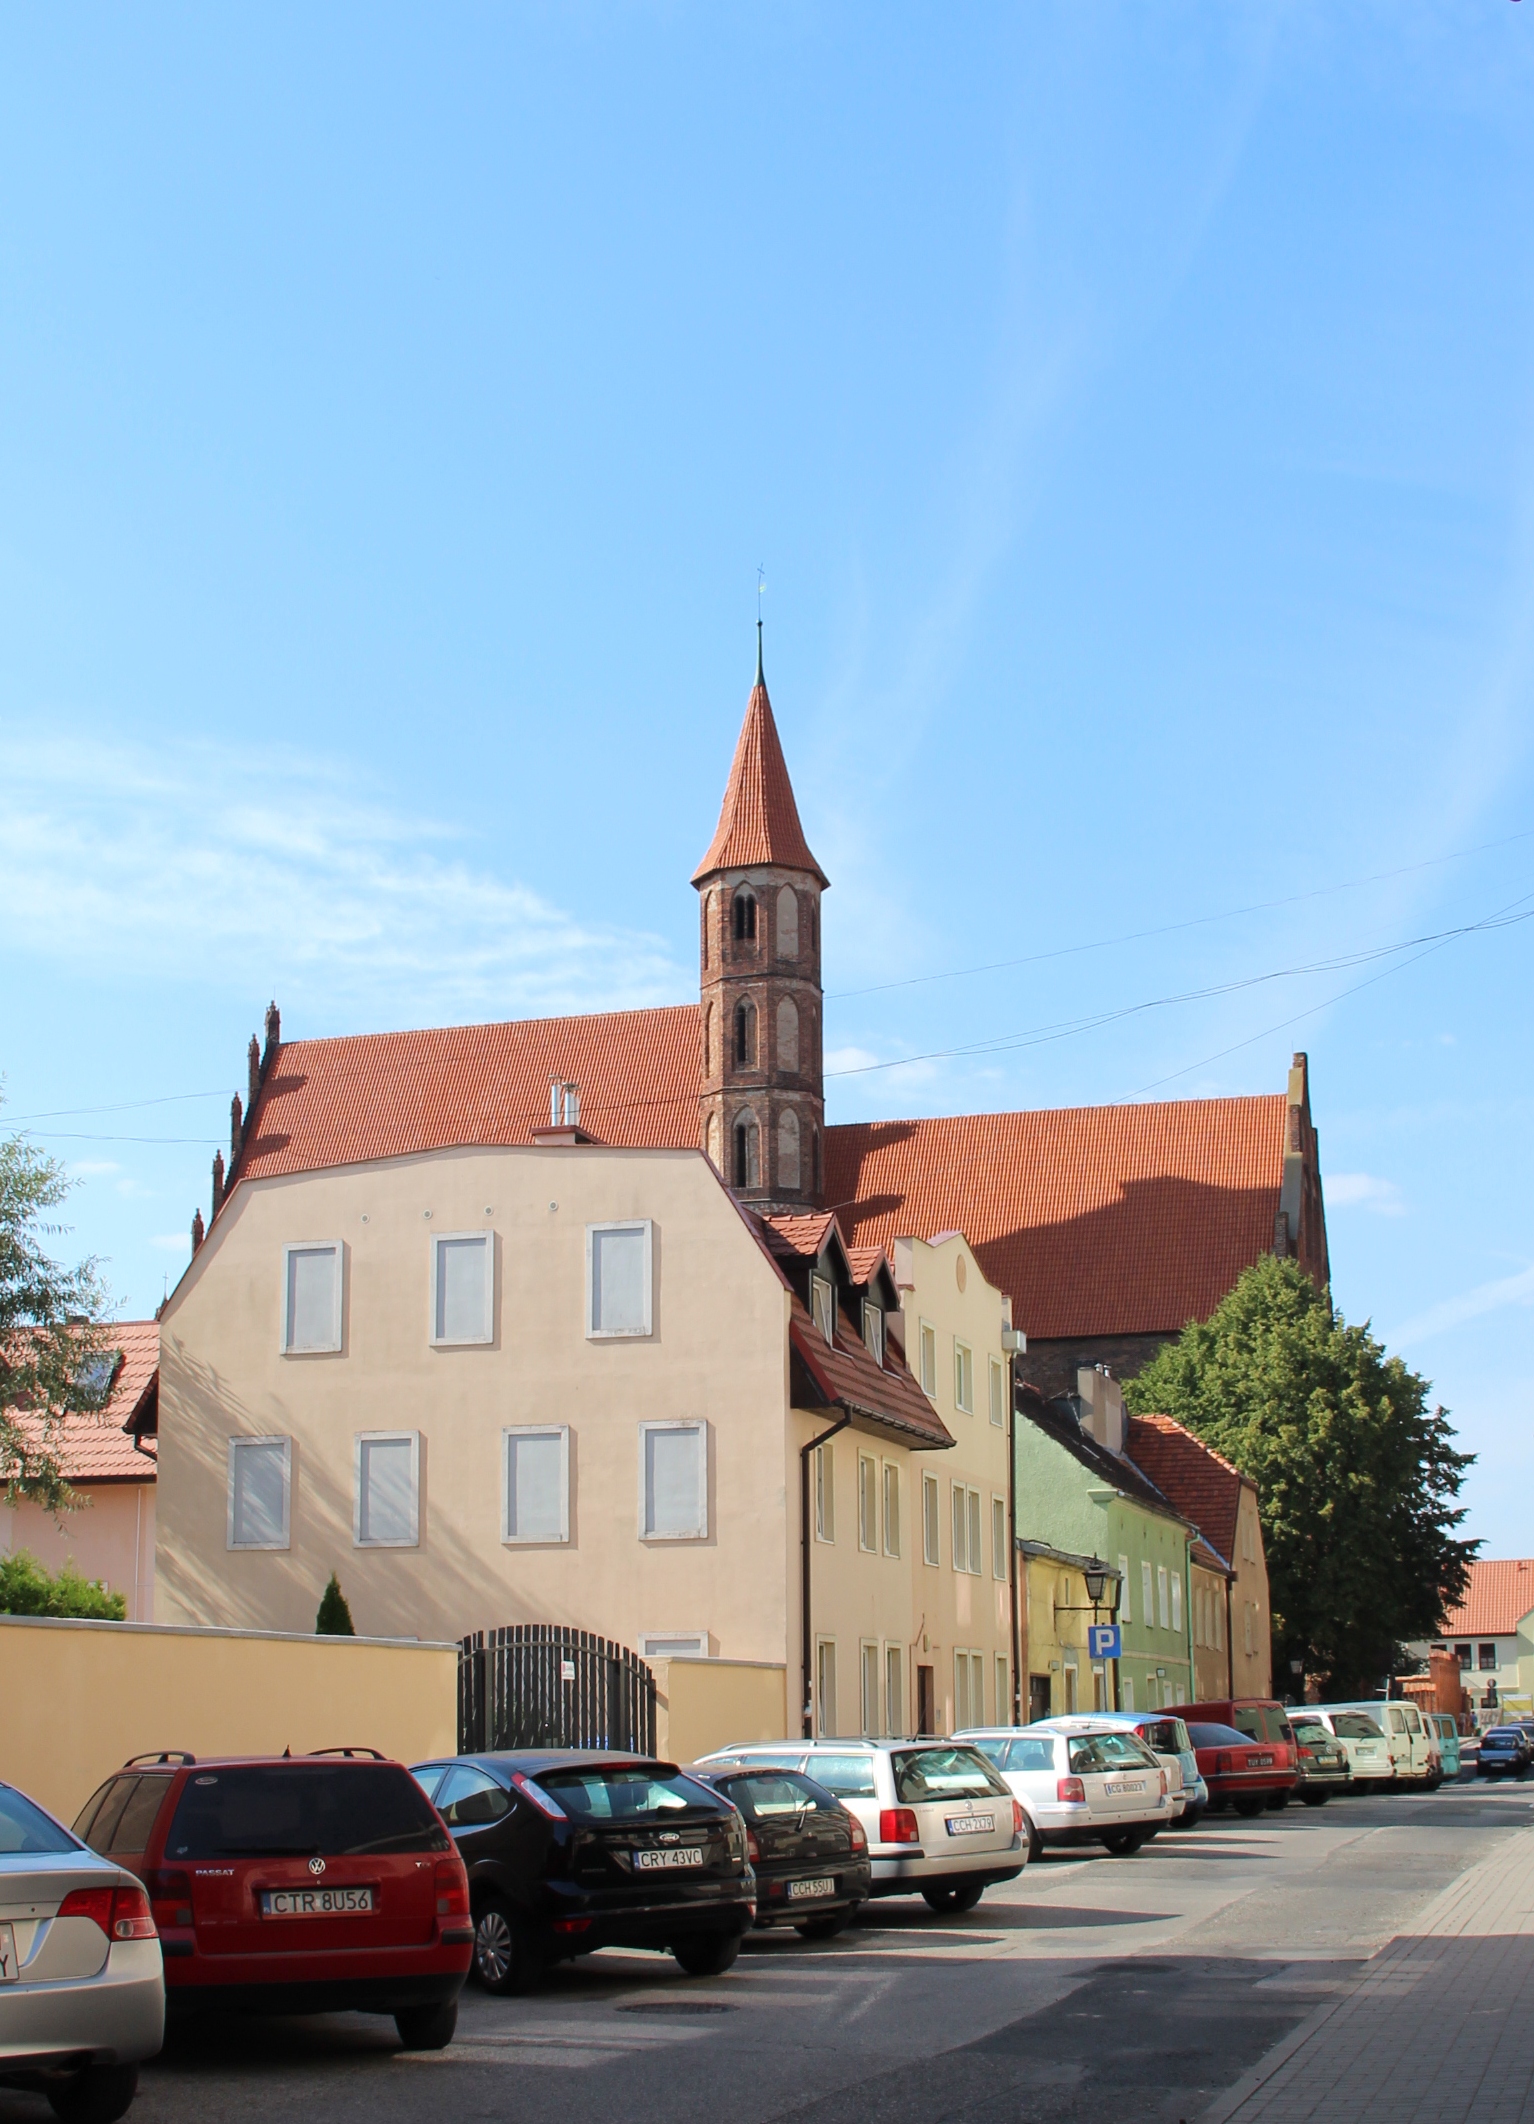 Kościół pofranciszkański pw. św. Jakuba Starszego i św. Mikołaja, Chełmno